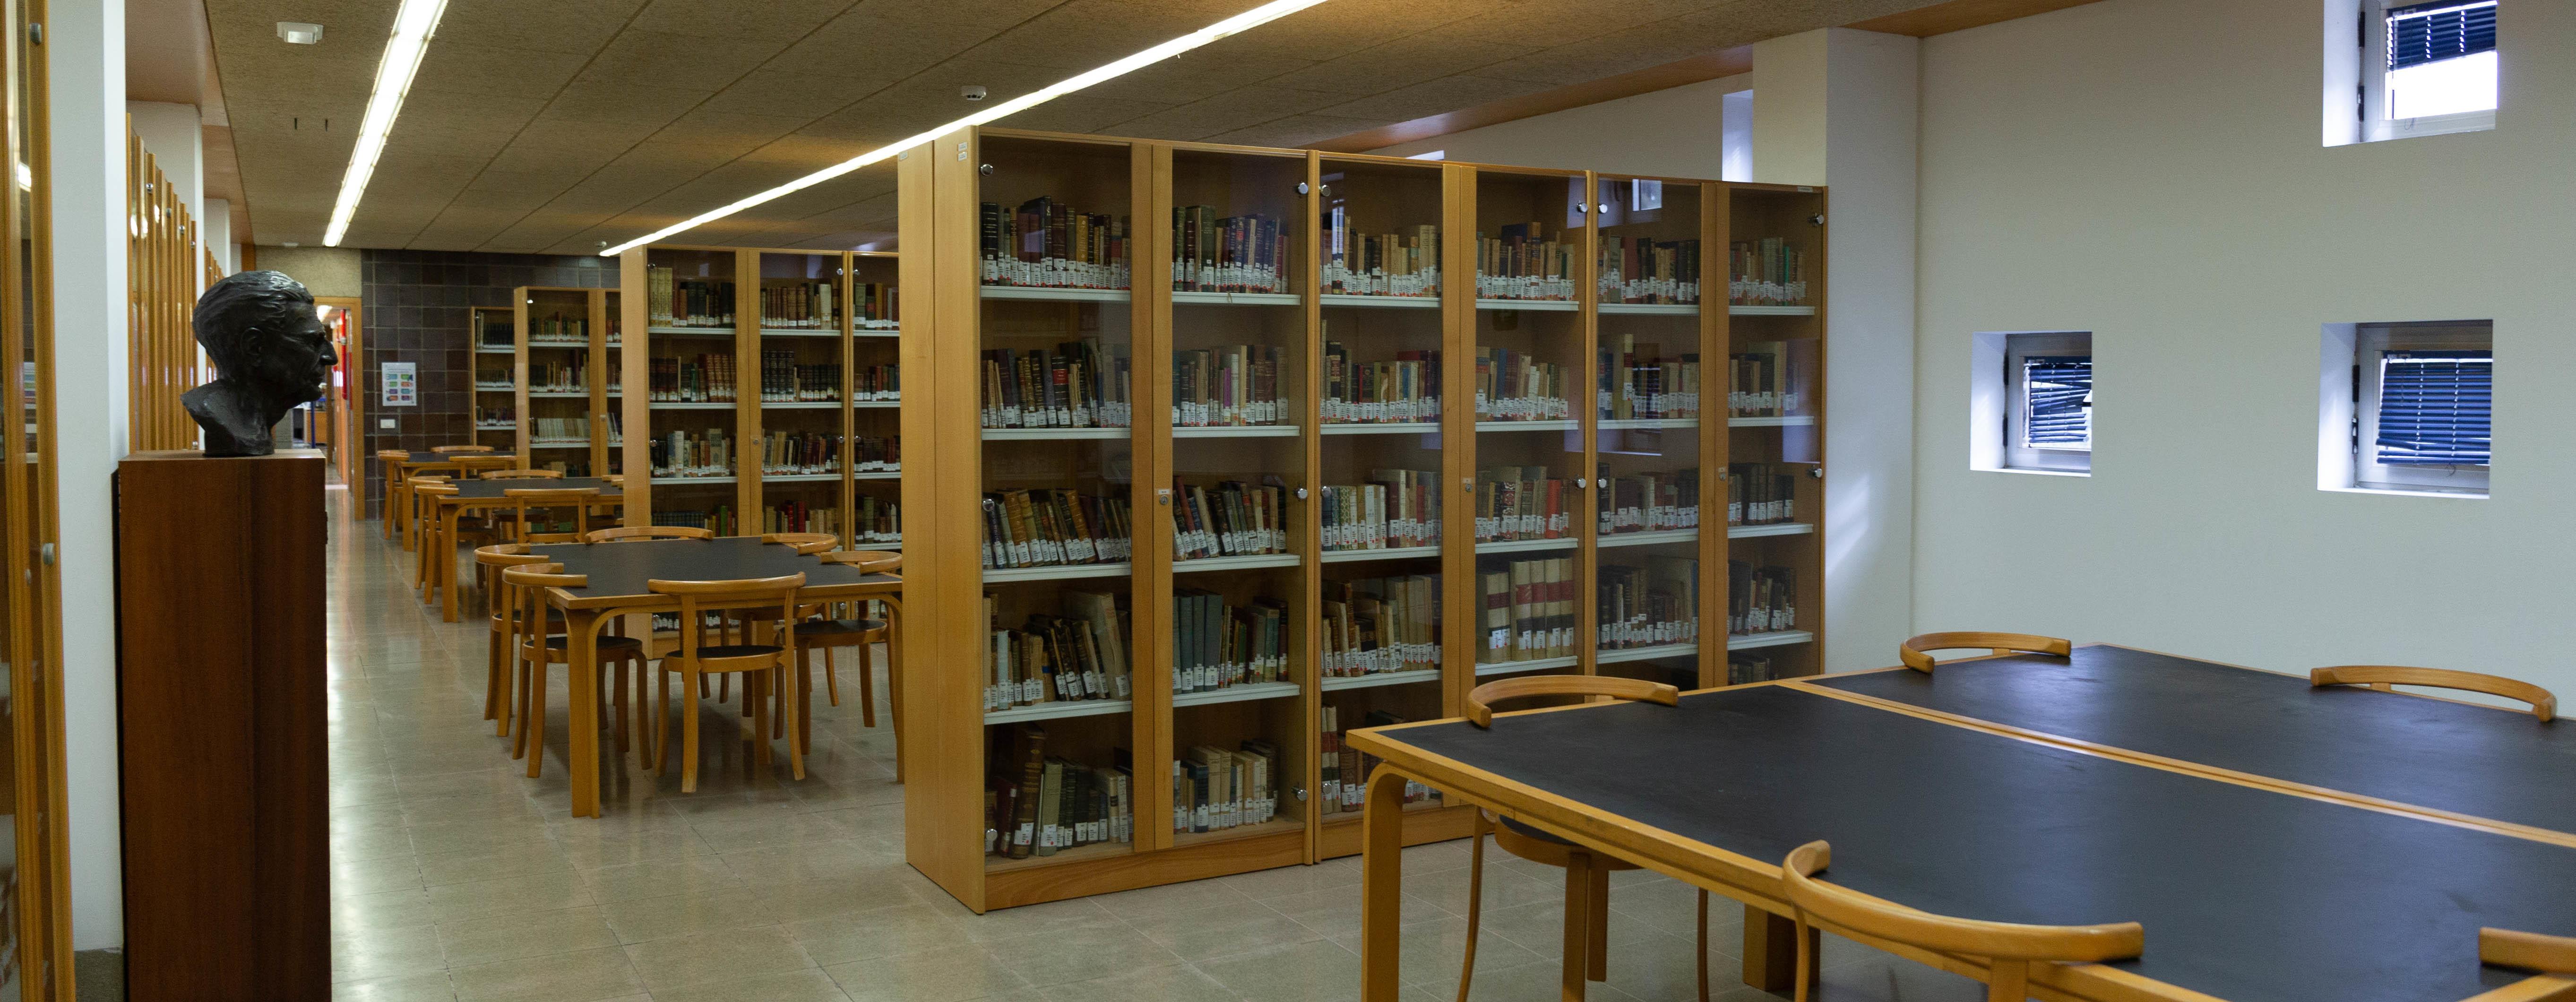 Vista en perspectiva de sala alargada con estanterías de libros que separan espacios dotados de mesas de trabajo y sillas. En un lateral, busto de Saulo Torón.